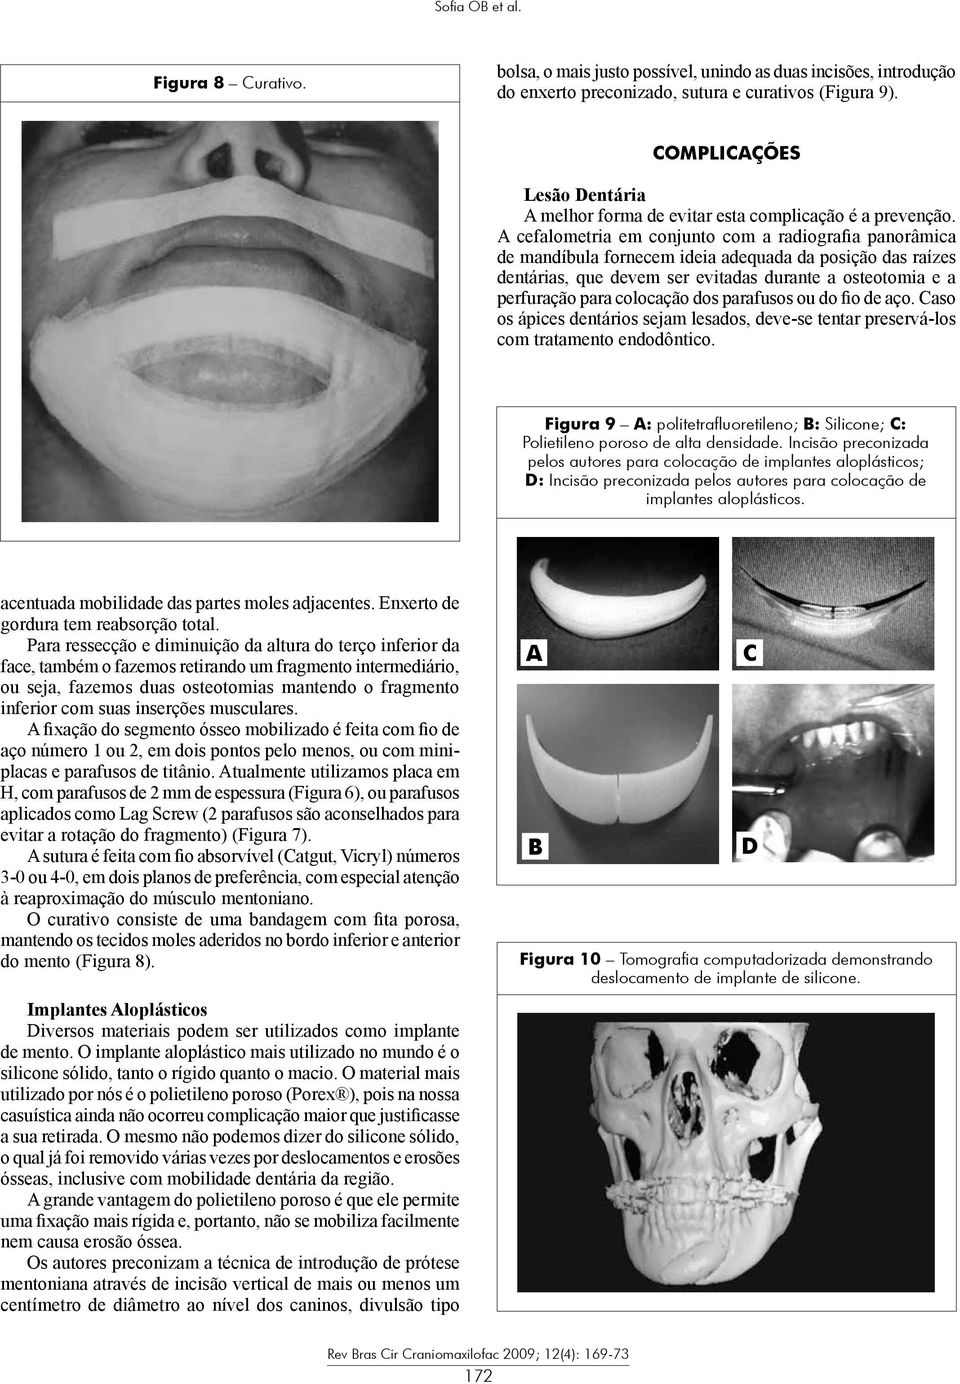 A cefalometria em conjunto com a radiografia panorâmica de mandíbula fornecem ideia adequada da posição das raízes dentárias, que devem ser evitadas durante a osteotomia e a perfuração para colocação